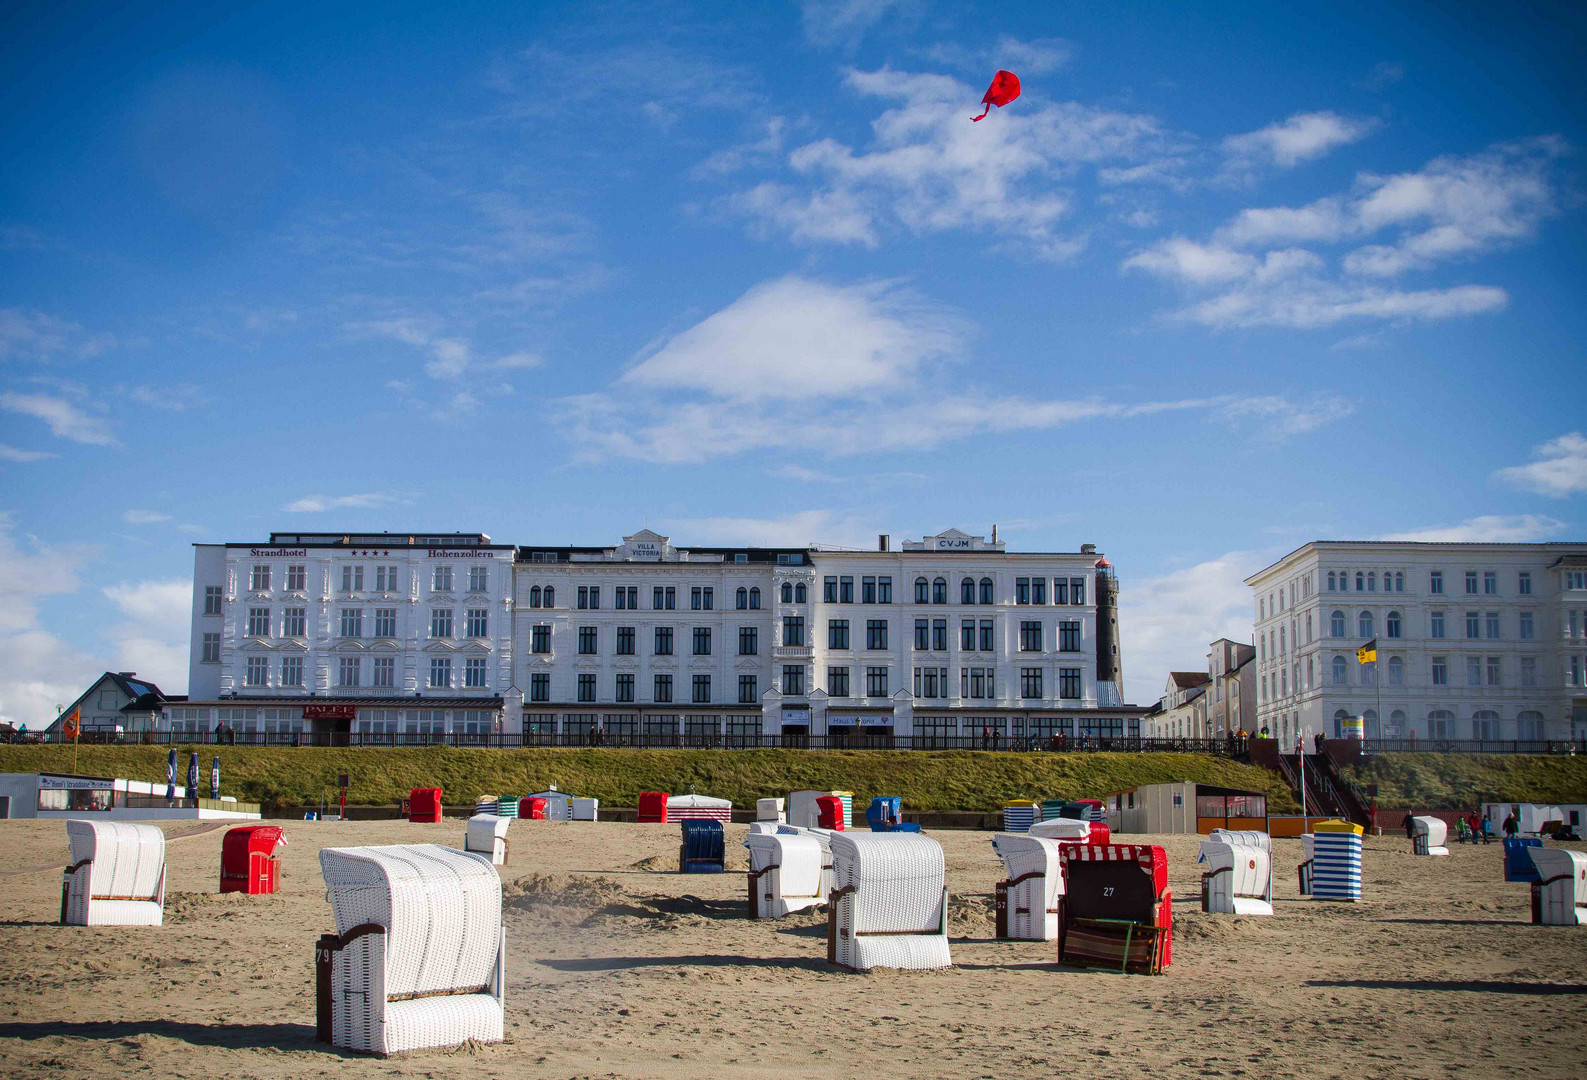 Strandhotels in Borkum